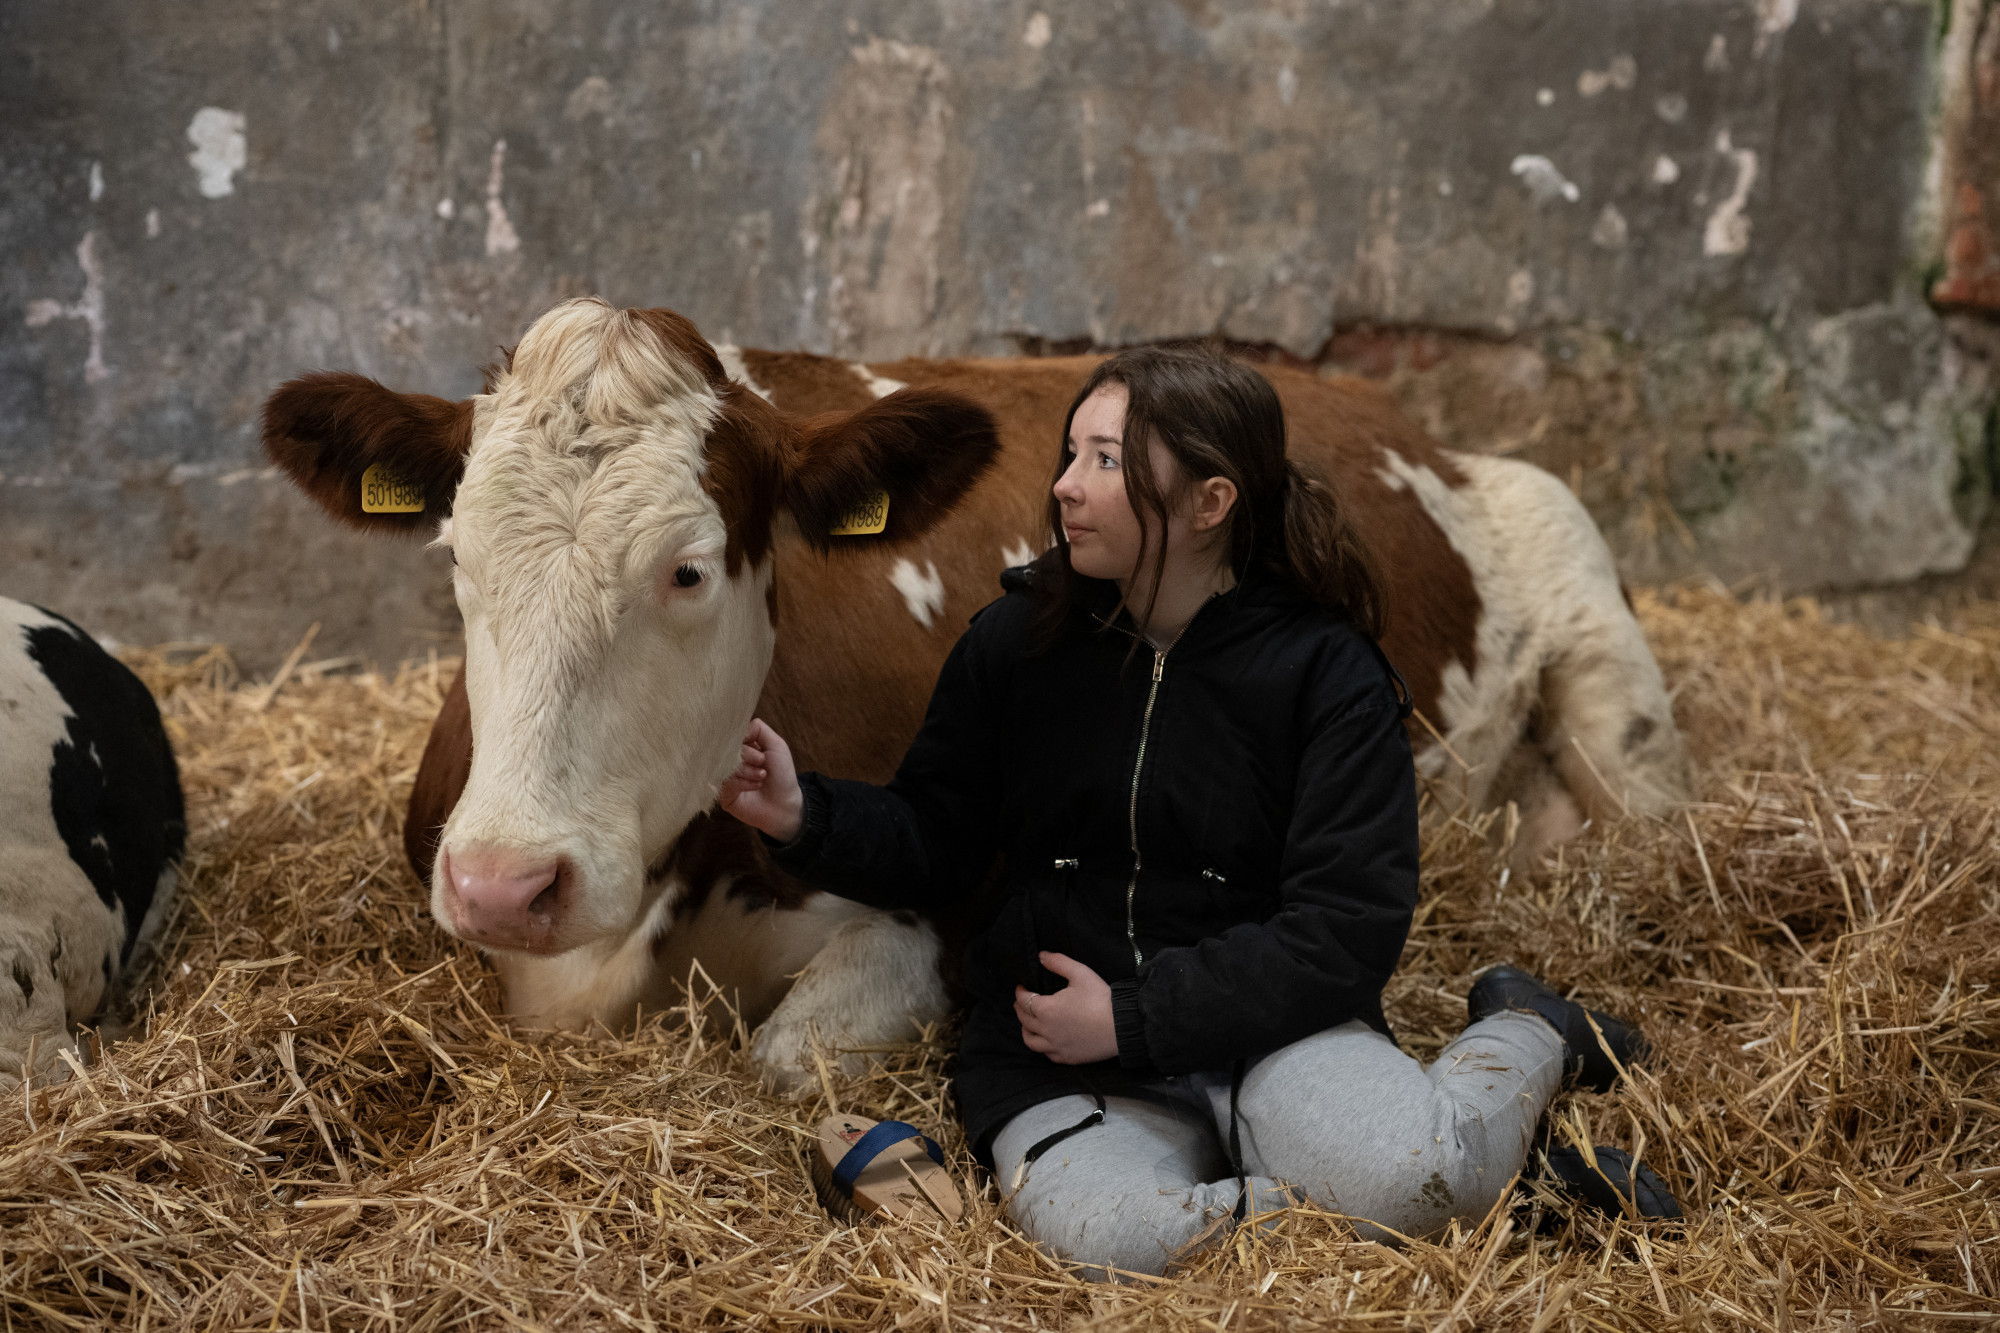 Ölelgess tehenet! A szarvasmarha-asszisztált terápia az embert és az állatot is boldogítja